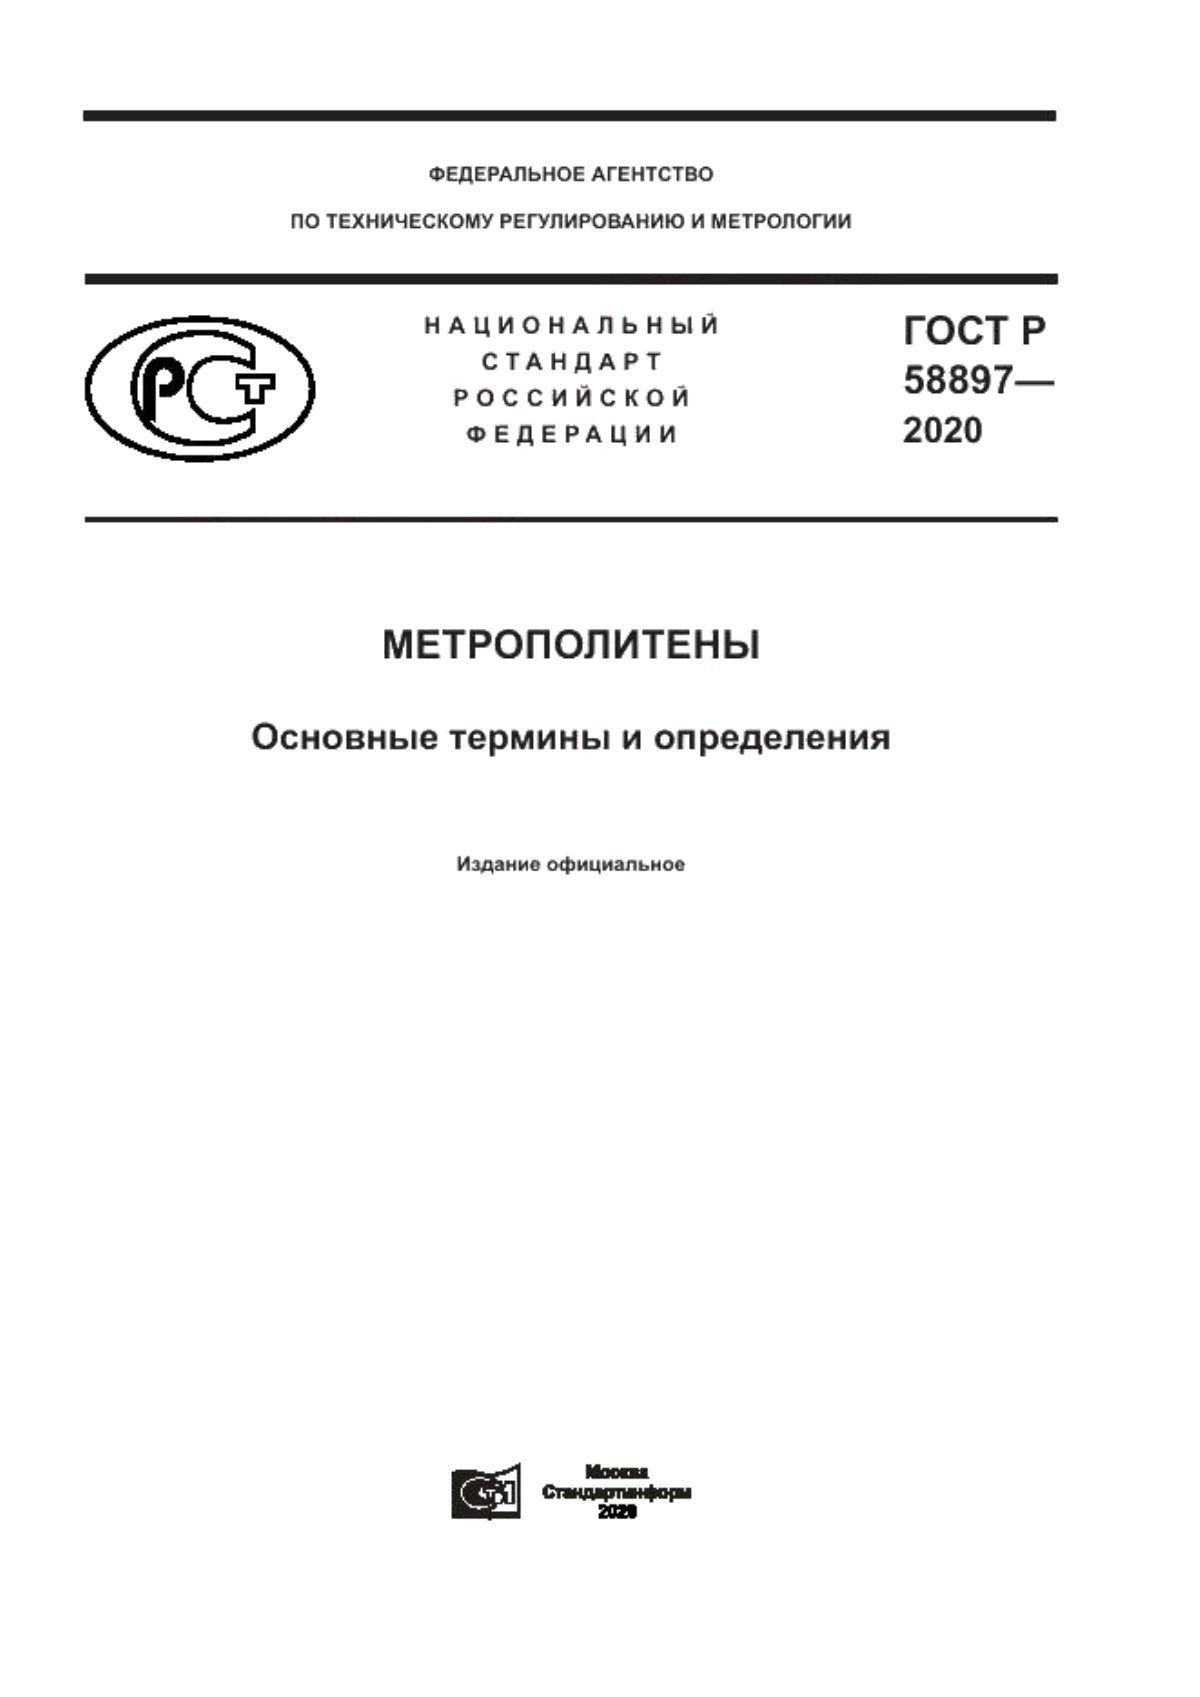 ГОСТ Р 58897-2020 Метрополитены. Основные термины и определения